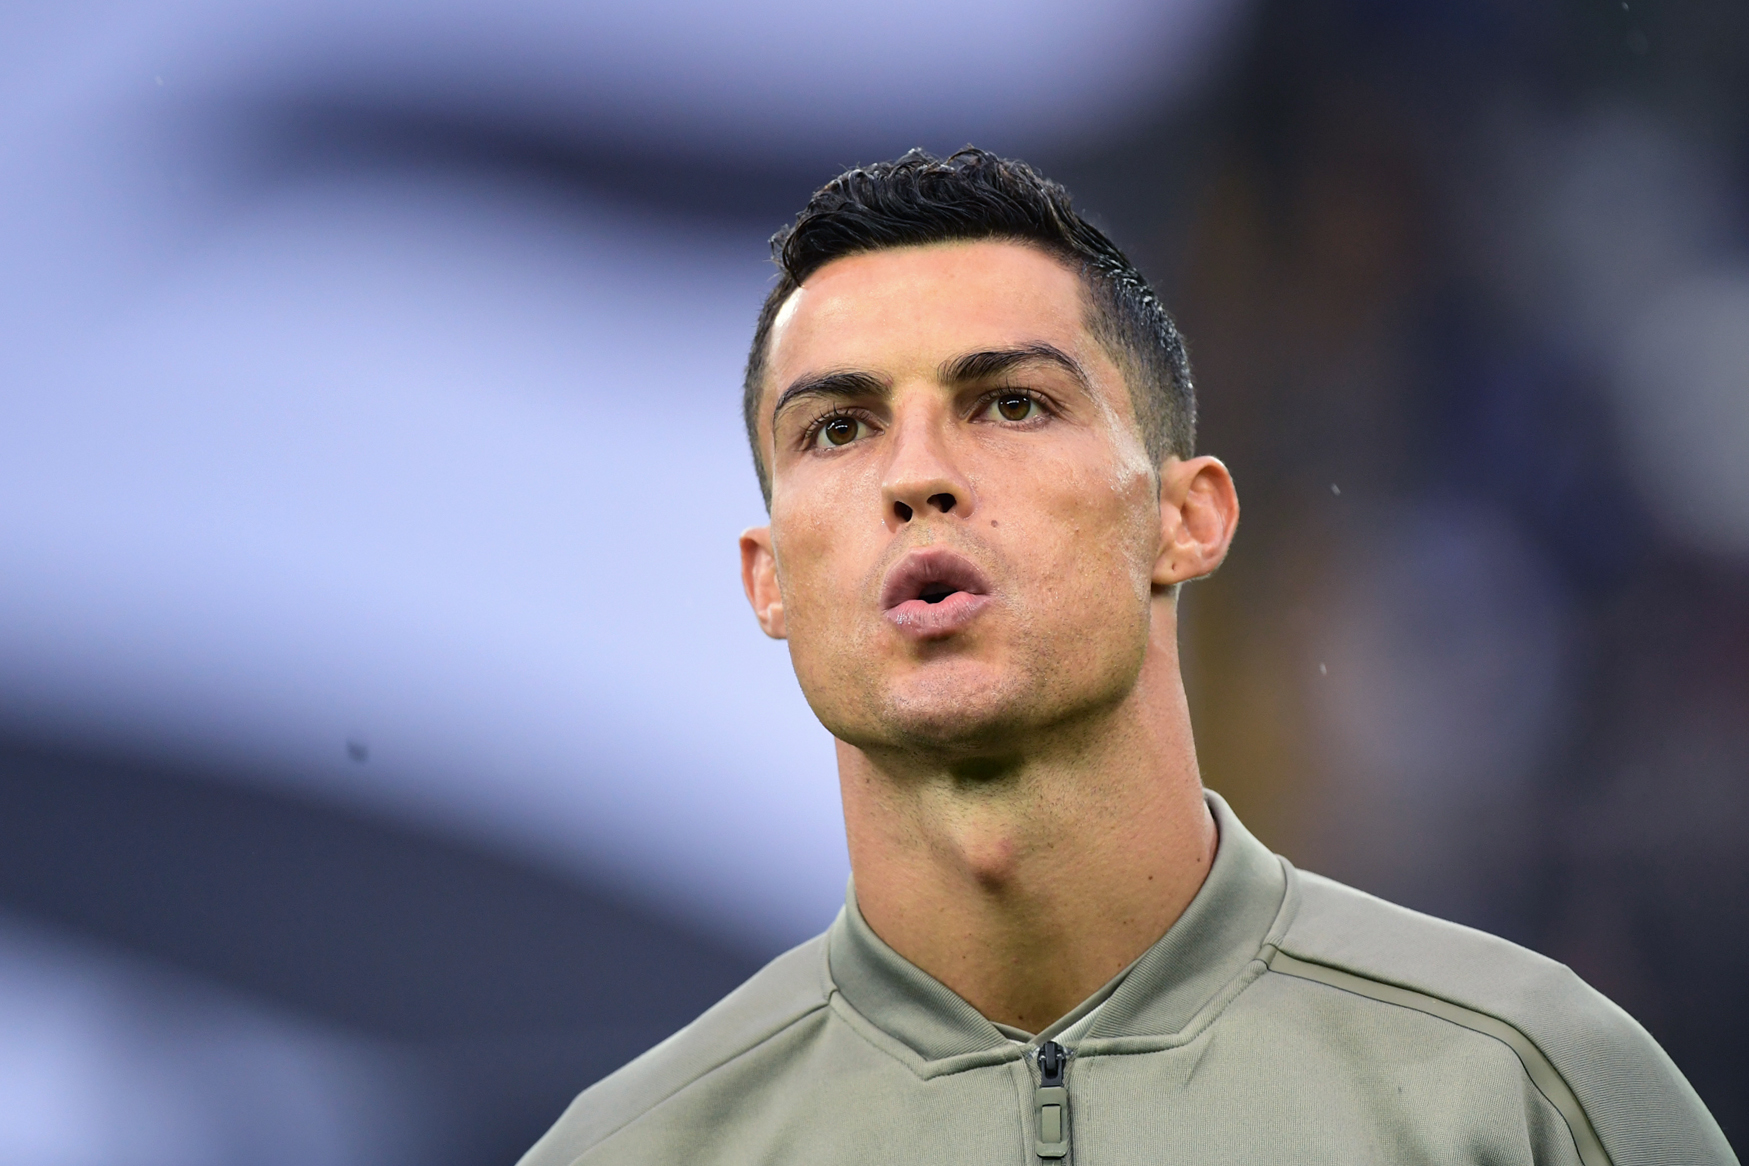 Leilão de camisola autografada por Cristiano Ronaldo quer ajudar ‘Pipinho’